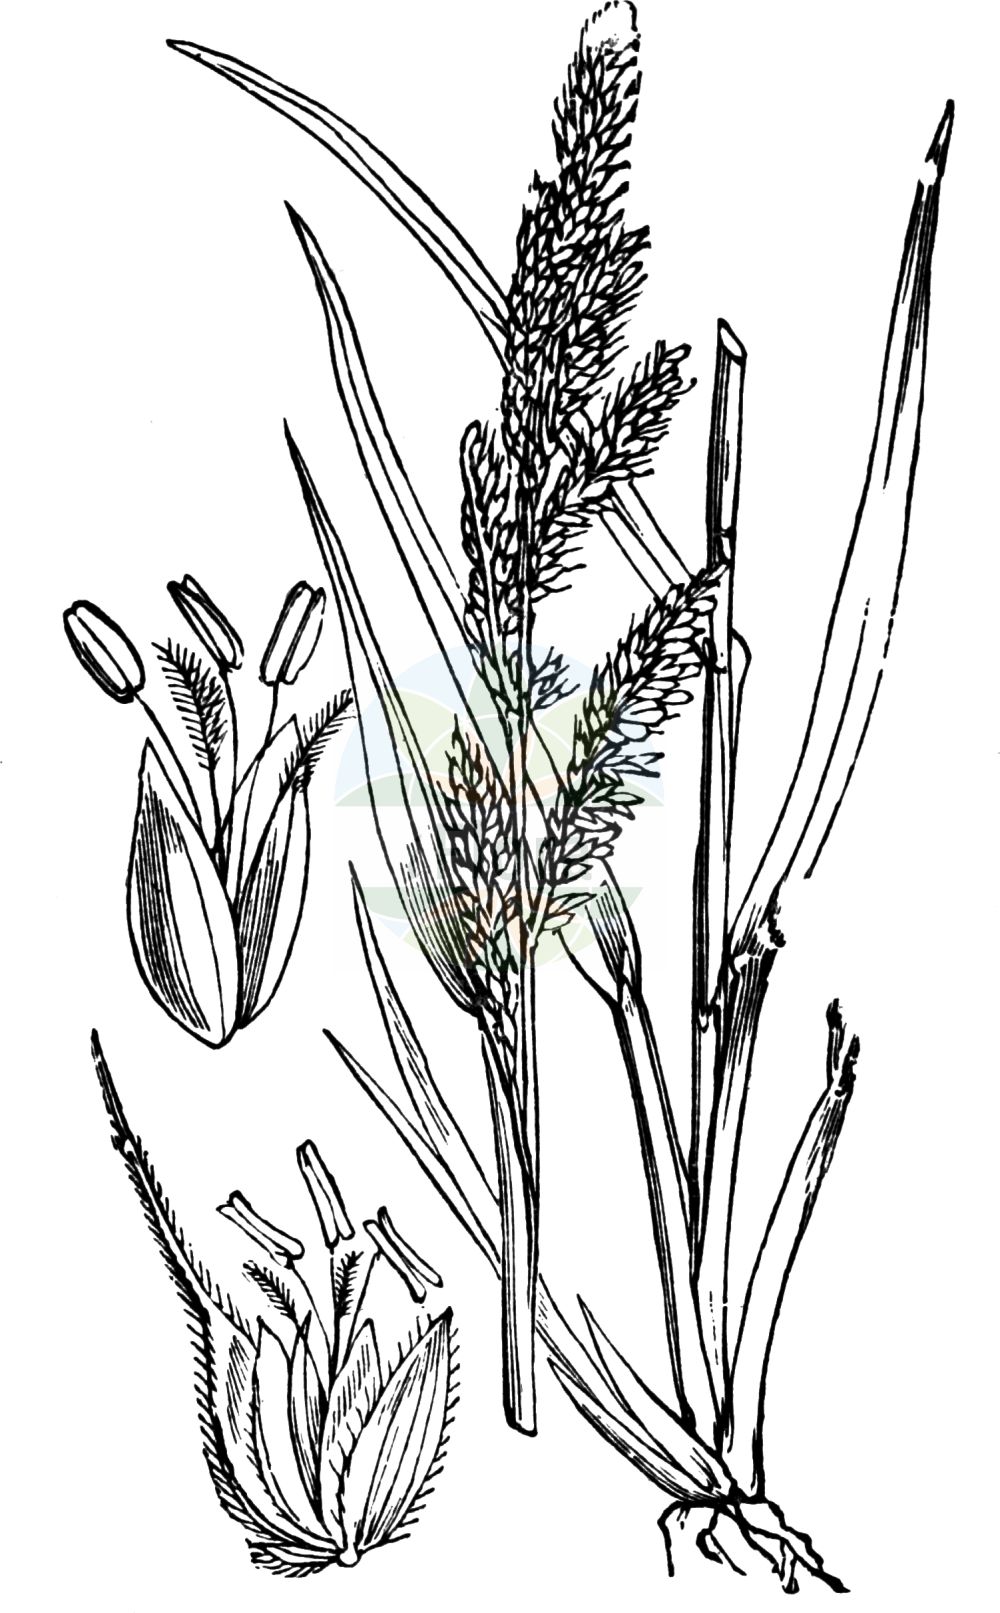 Historische Abbildung von Echinochloa crus-galli (Gewöhnliche Hühnerhirse - Cockspur). Das Bild zeigt Blatt, Bluete, Frucht und Same. ---- Historical Drawing of Echinochloa crus-galli (Gewöhnliche Hühnerhirse - Cockspur). The image is showing leaf, flower, fruit and seed.(Echinochloa crus-galli,Gewöhnliche Hühnerhirse,Cockspur,Echinochloa crus-galli,Panicum crus-galli,Gewoehnliche Huehnerhirse,Cockspur,Barnyard Grass,Barnyard Millet,Cockspurgrass,Common Barnyard Grass,Echinochloa,Hühnerhirse,Cockspur Grass,Poaceae,Süßgräser,Grass family,Blatt,Bluete,Frucht,Same,leaf,flower,fruit,seed,Fitch et al. (1880))